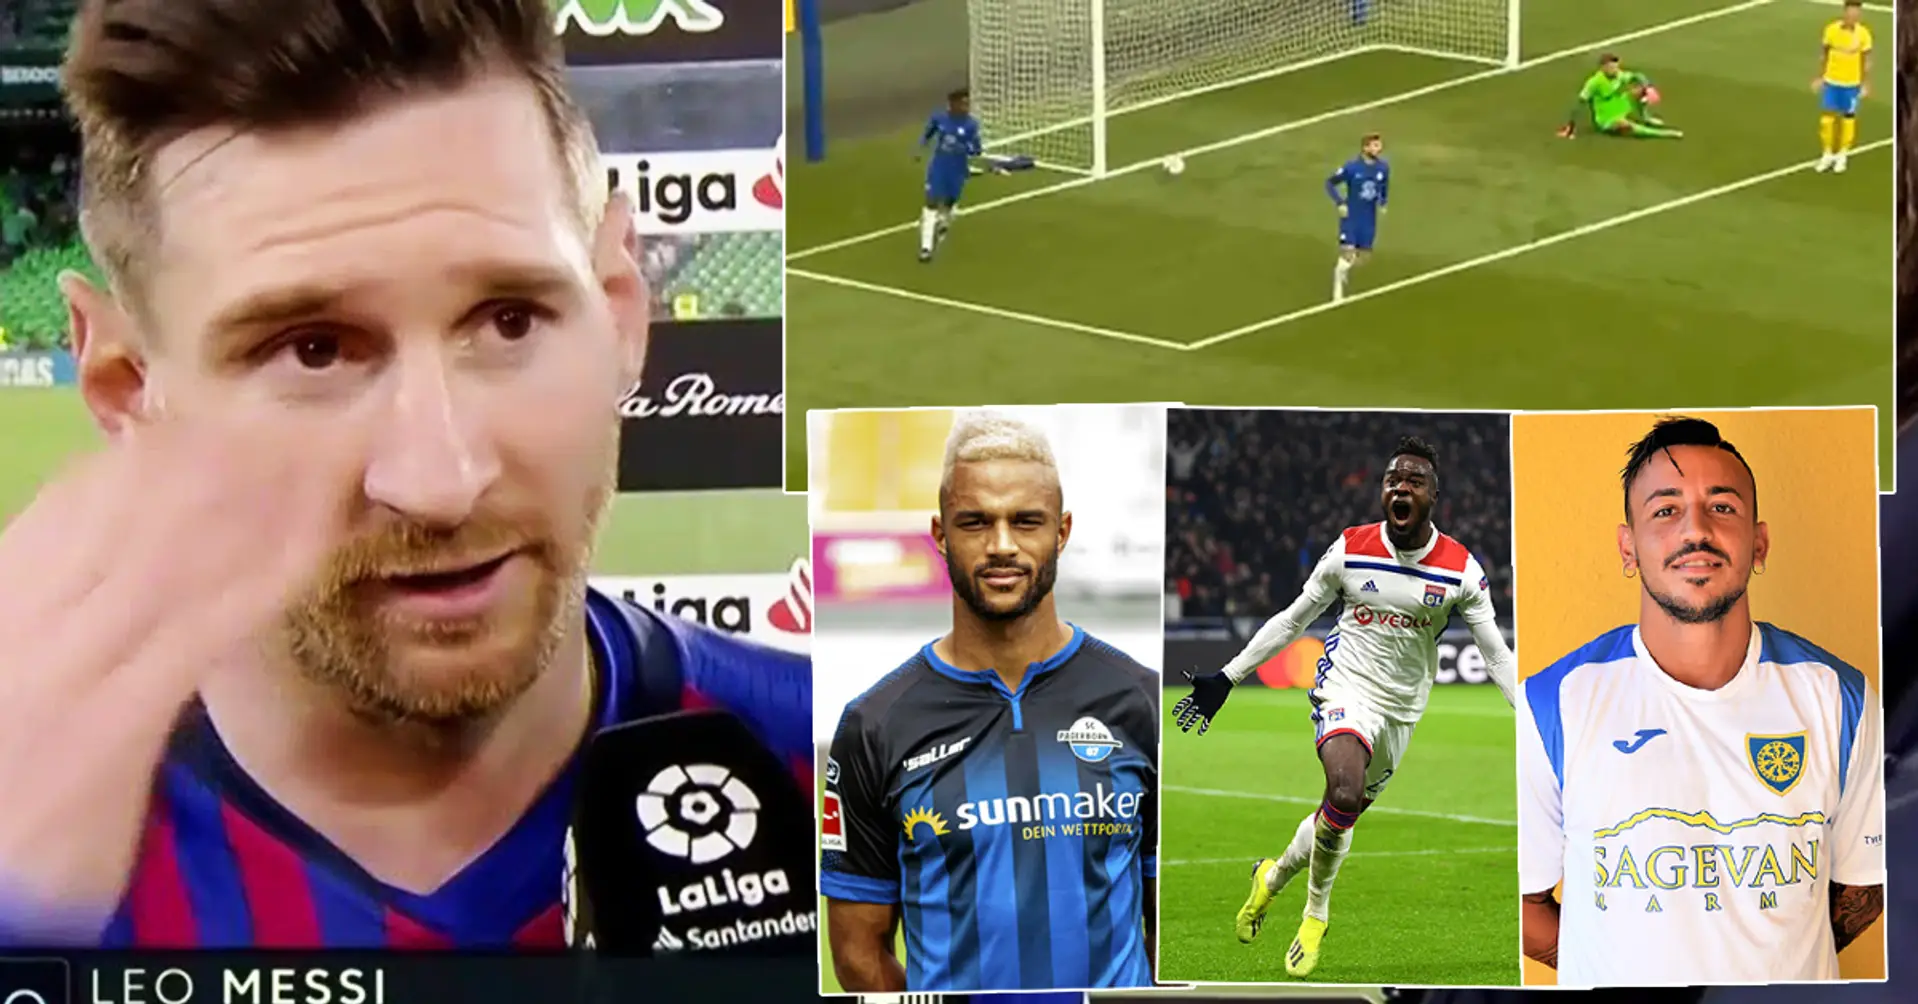 Nel 2015 Leo Messi ha scelto 10 talenti che sarebbero diventati stelle del futuro, che fine hanno fatto?